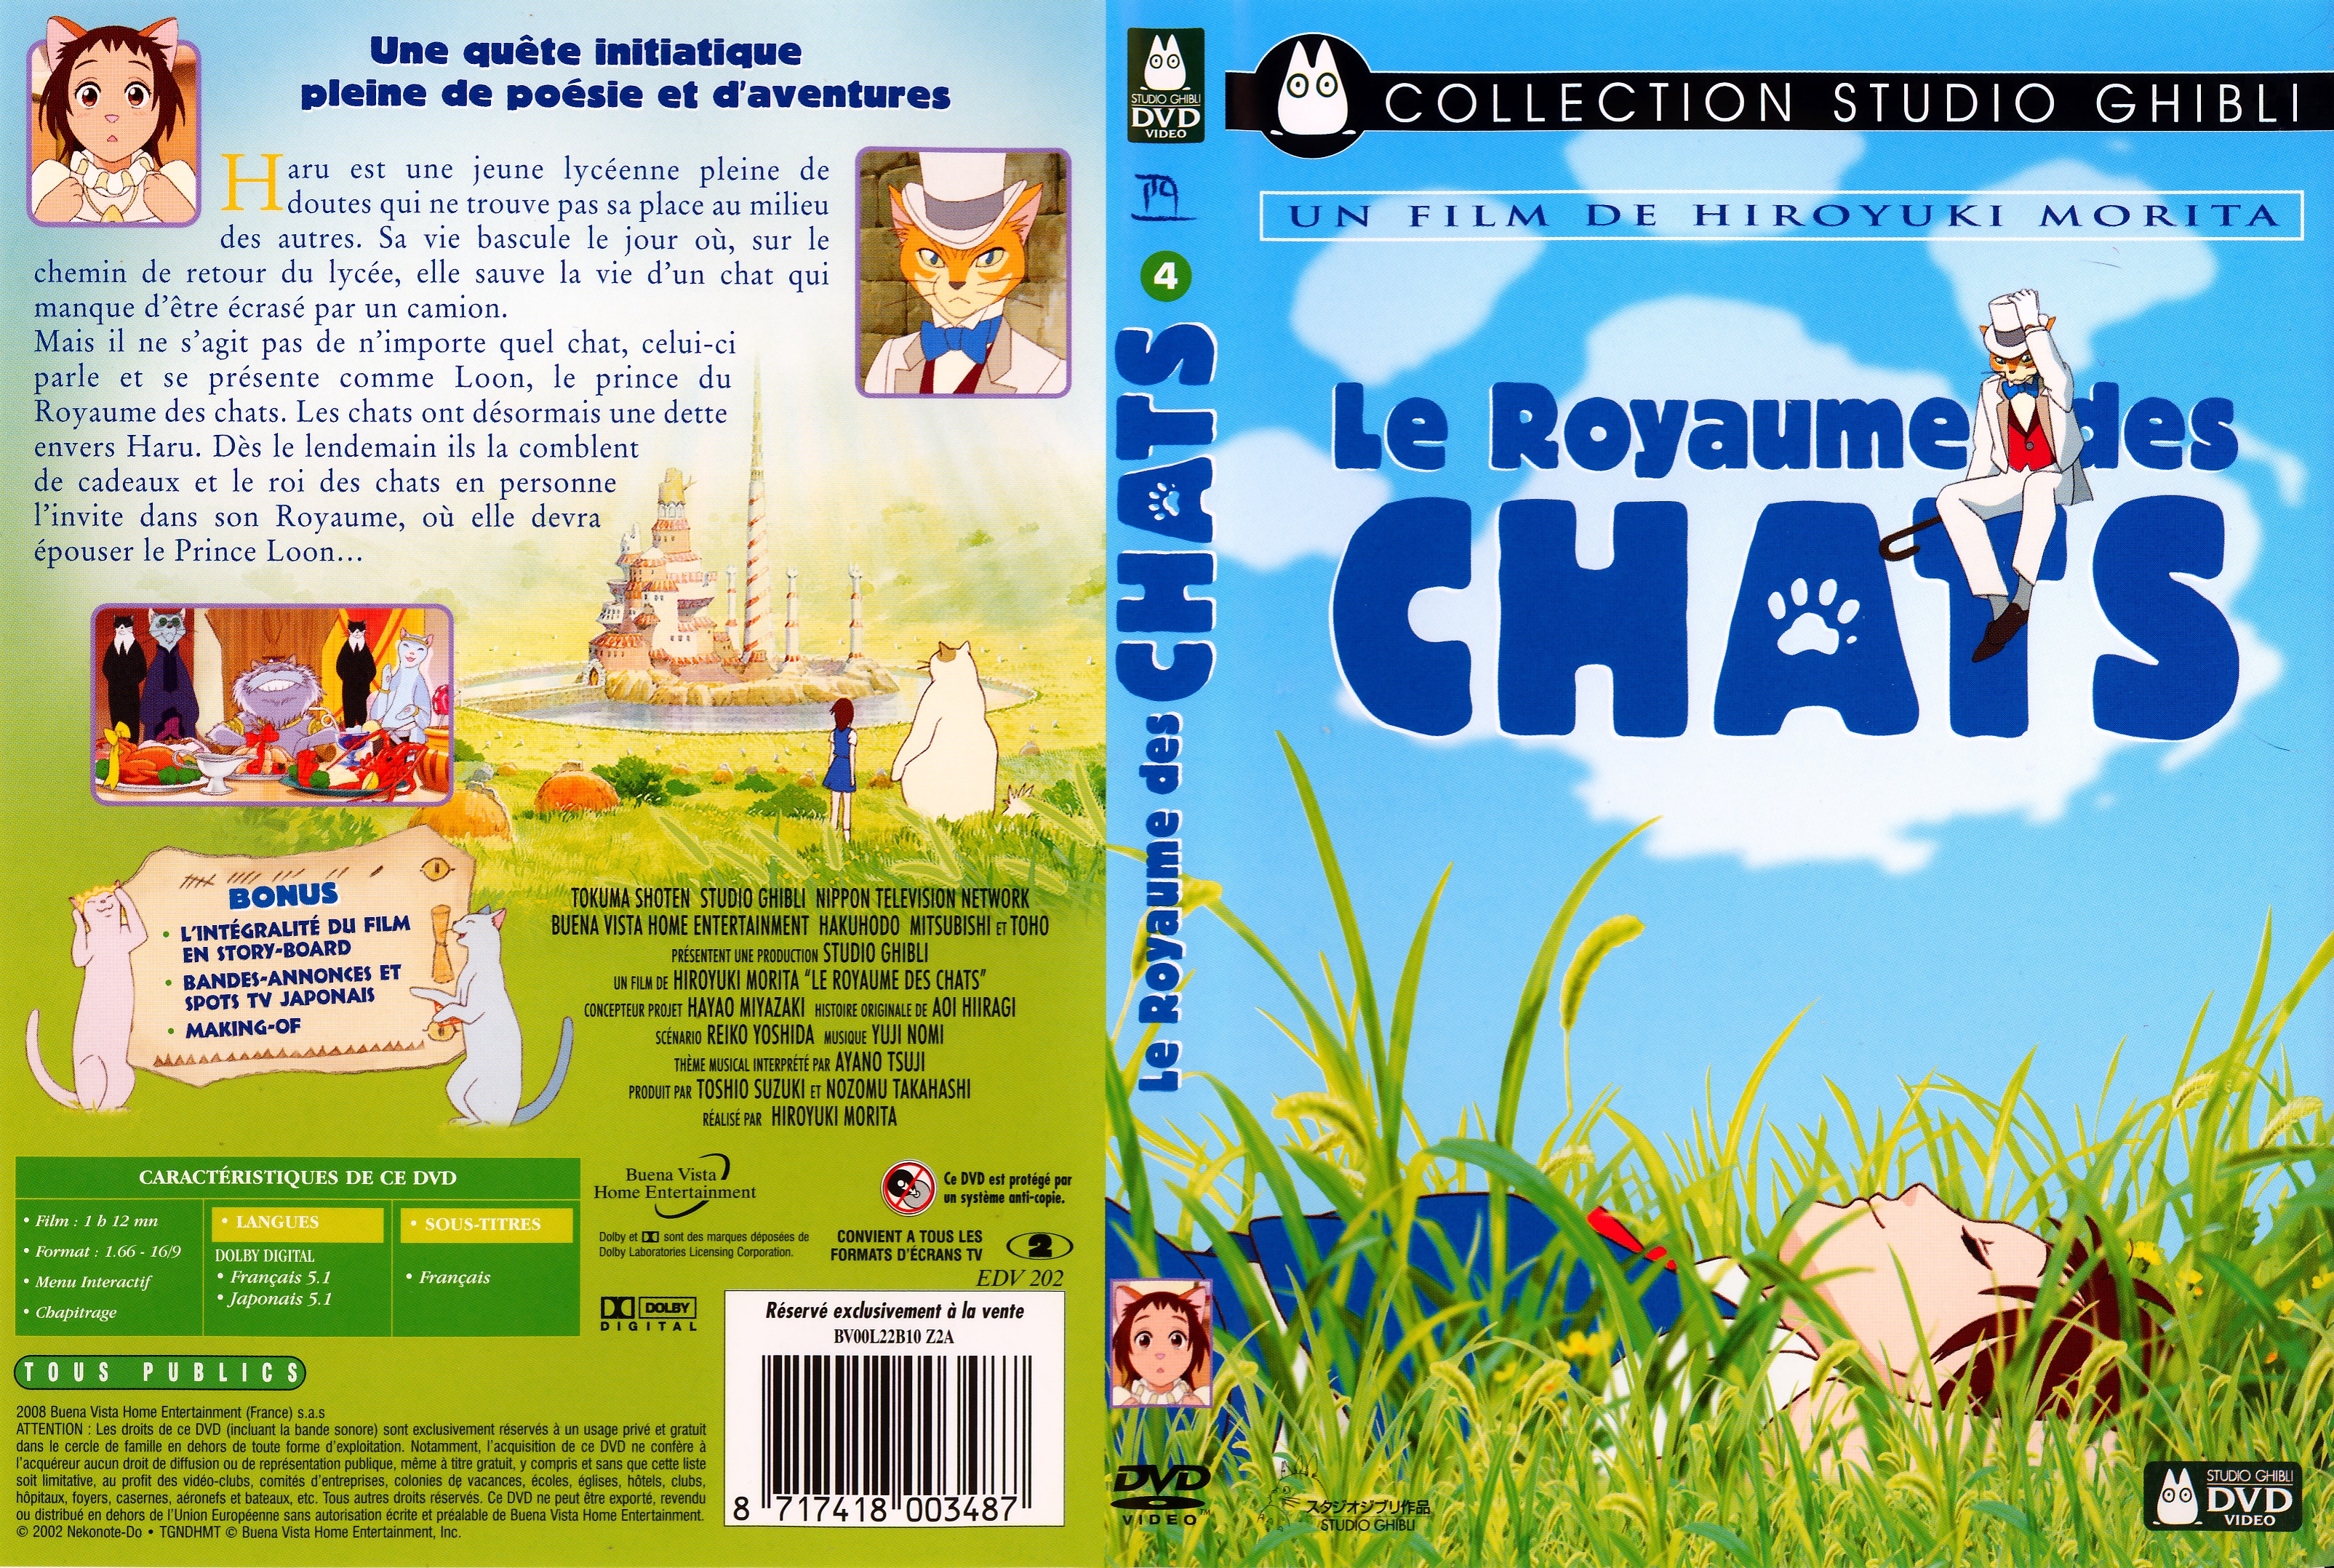 Jaquette DVD Le royaume des chats v2